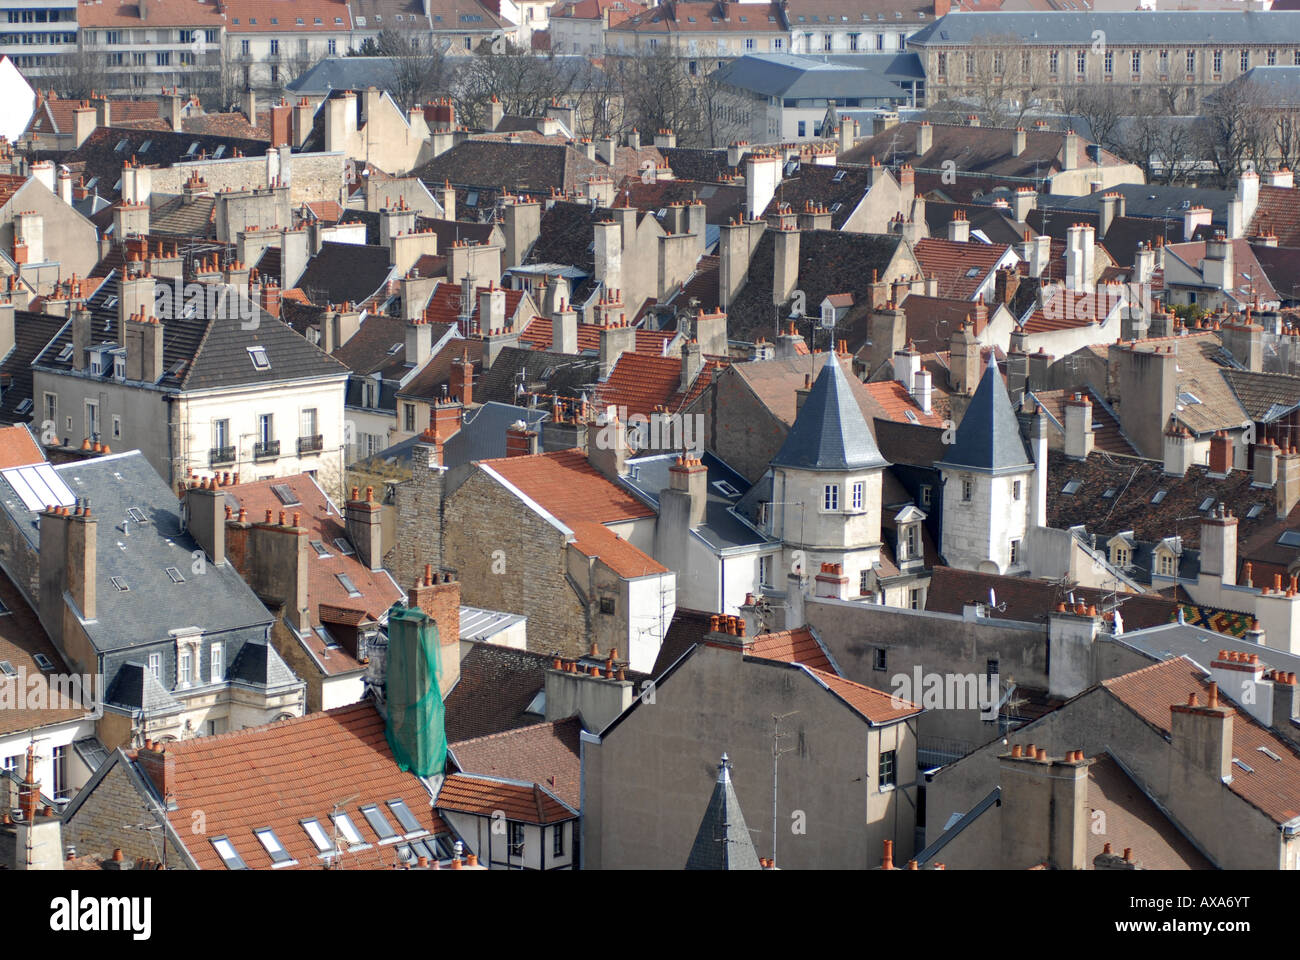 Des toits et des cheminées à Dijon Bourgogne France Banque D'Images